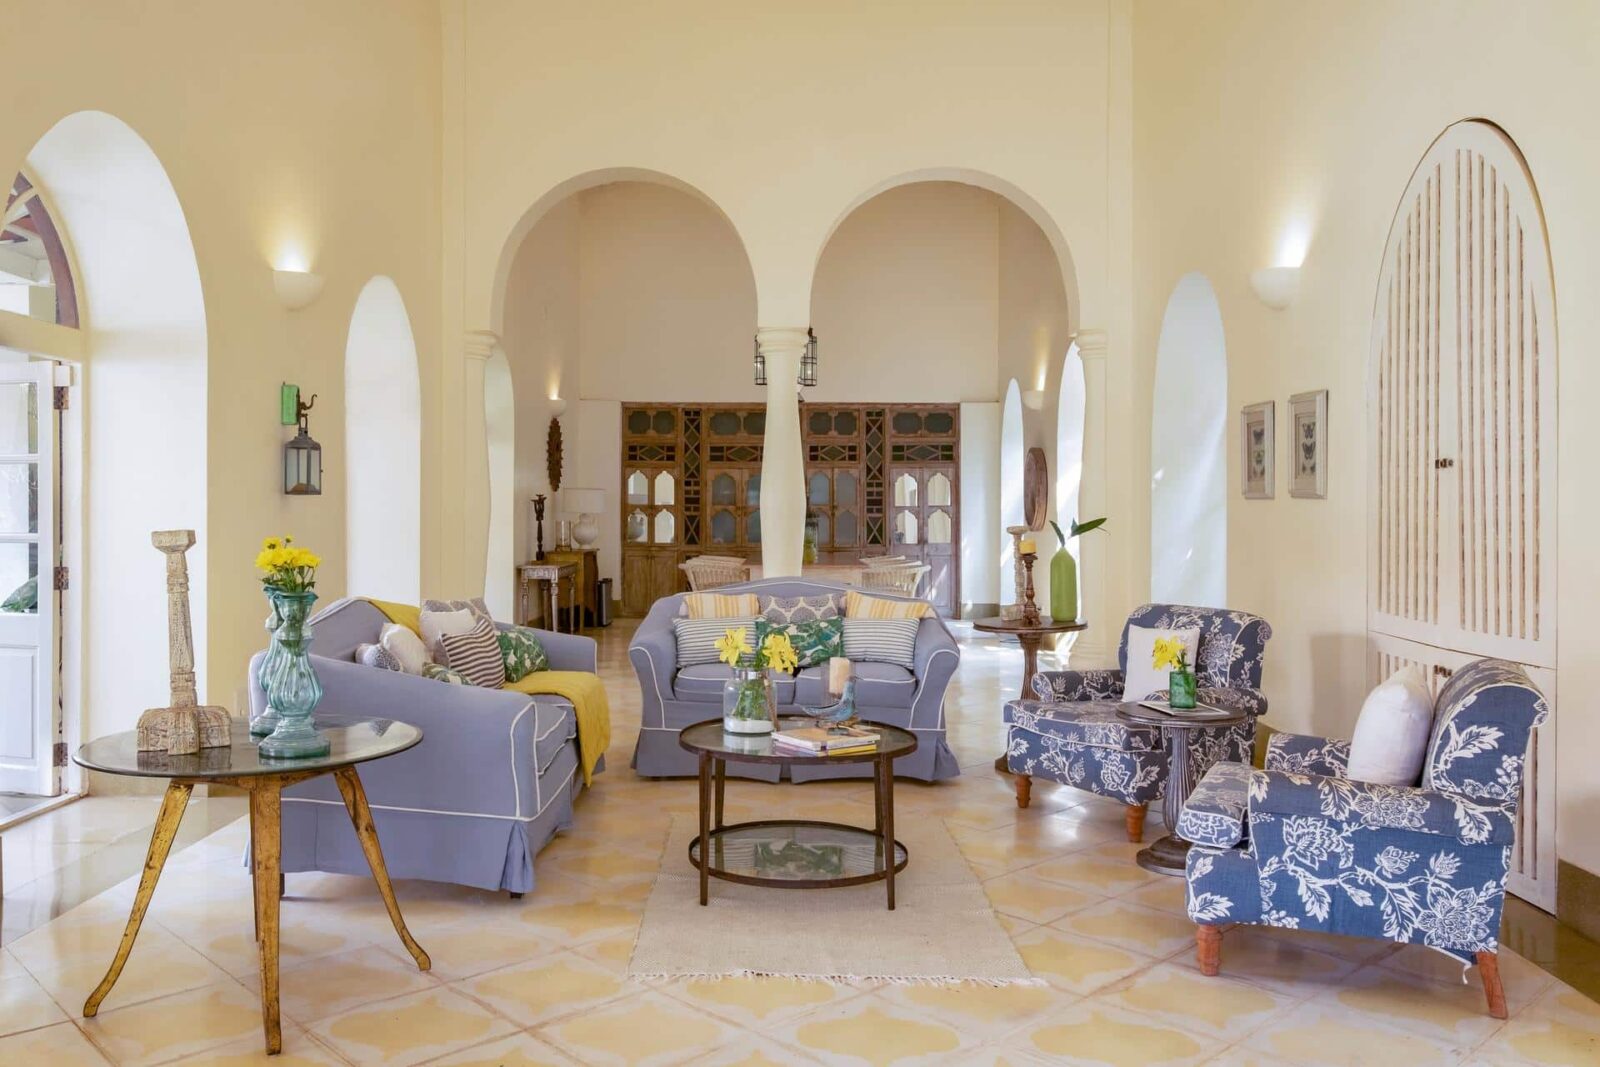 Villa Branco - Premium Villas for Sale in North Goa - Stunning Living Room